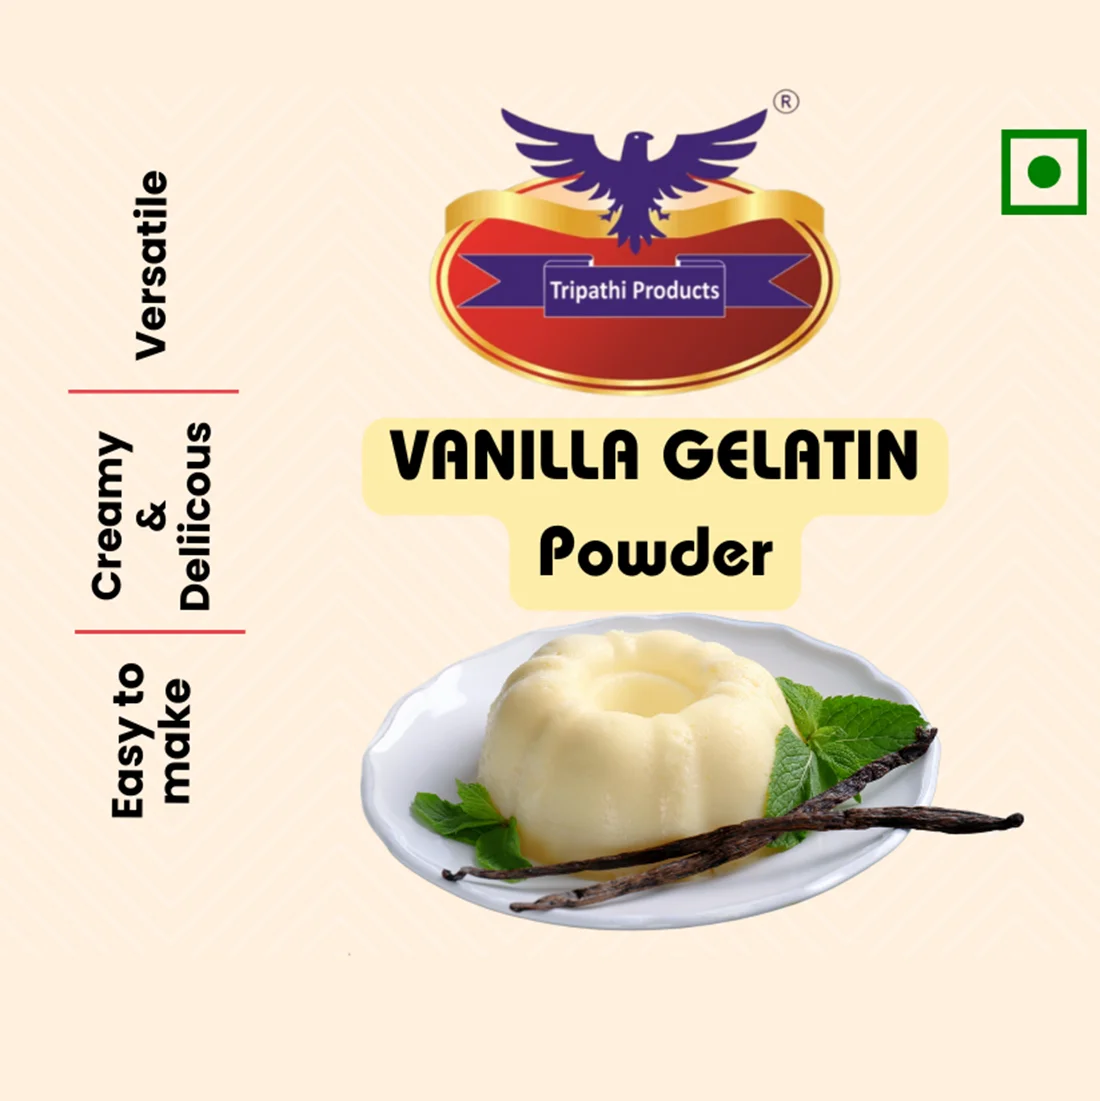 Vanilla flavoured Gelatin Powder